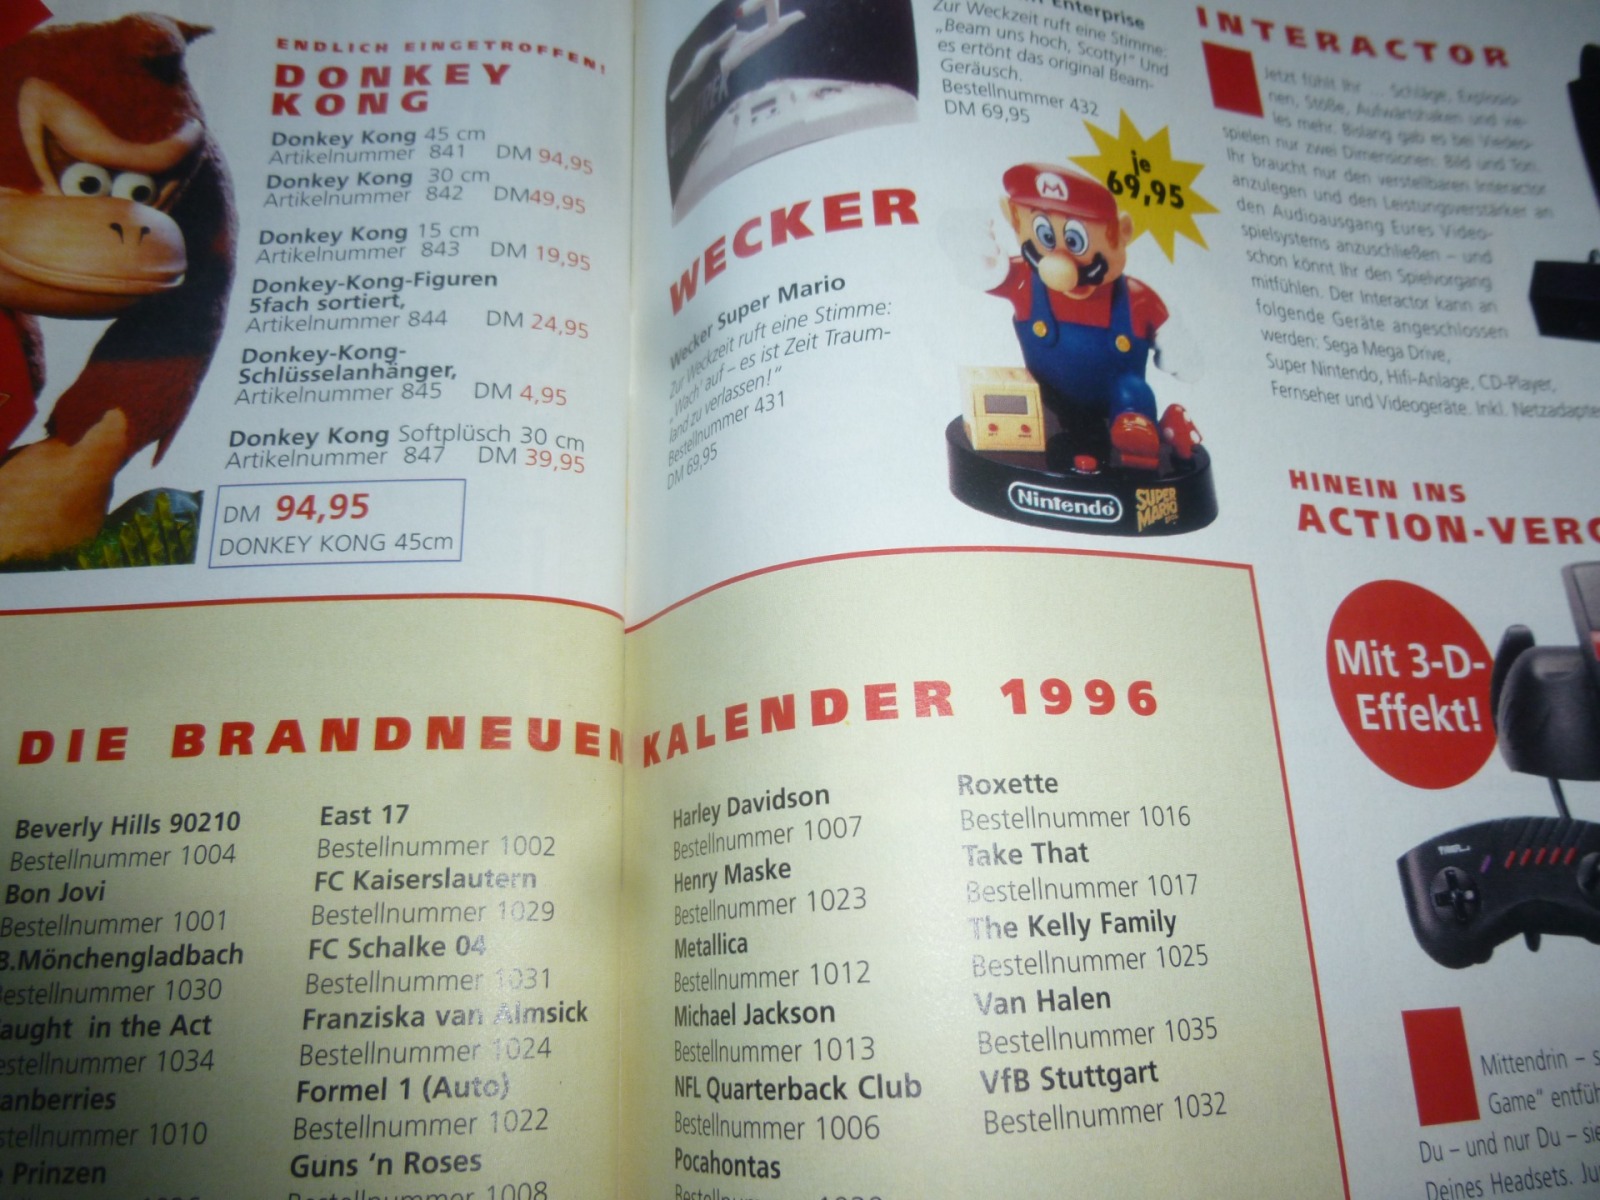 TOTAL Das unabhängige Magazin - 100% Nintendo - Ausgabe 3/96 1996 23